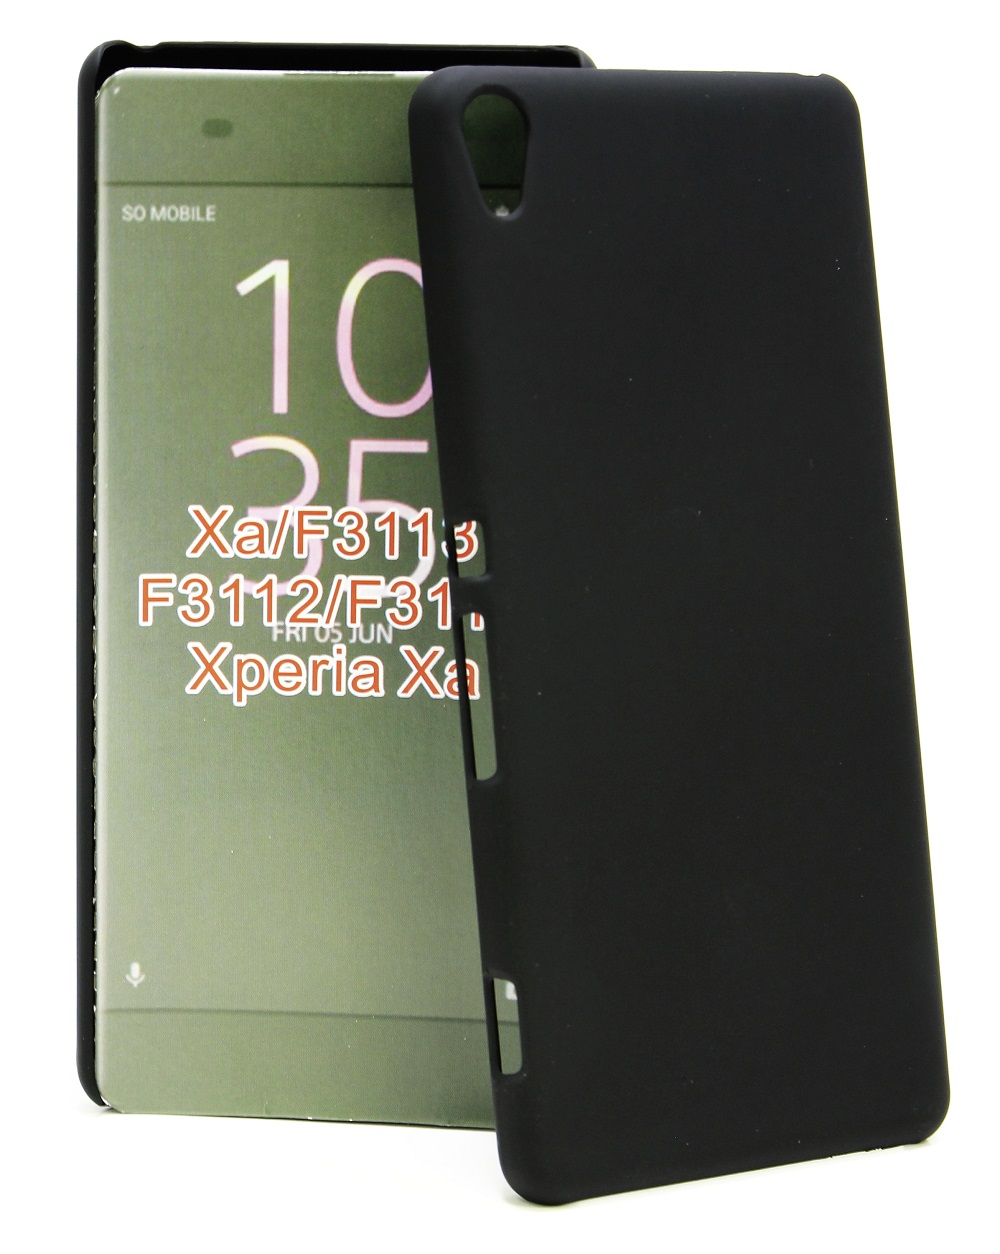 Hardcase Deksel Sony Xperia XA (F3111)